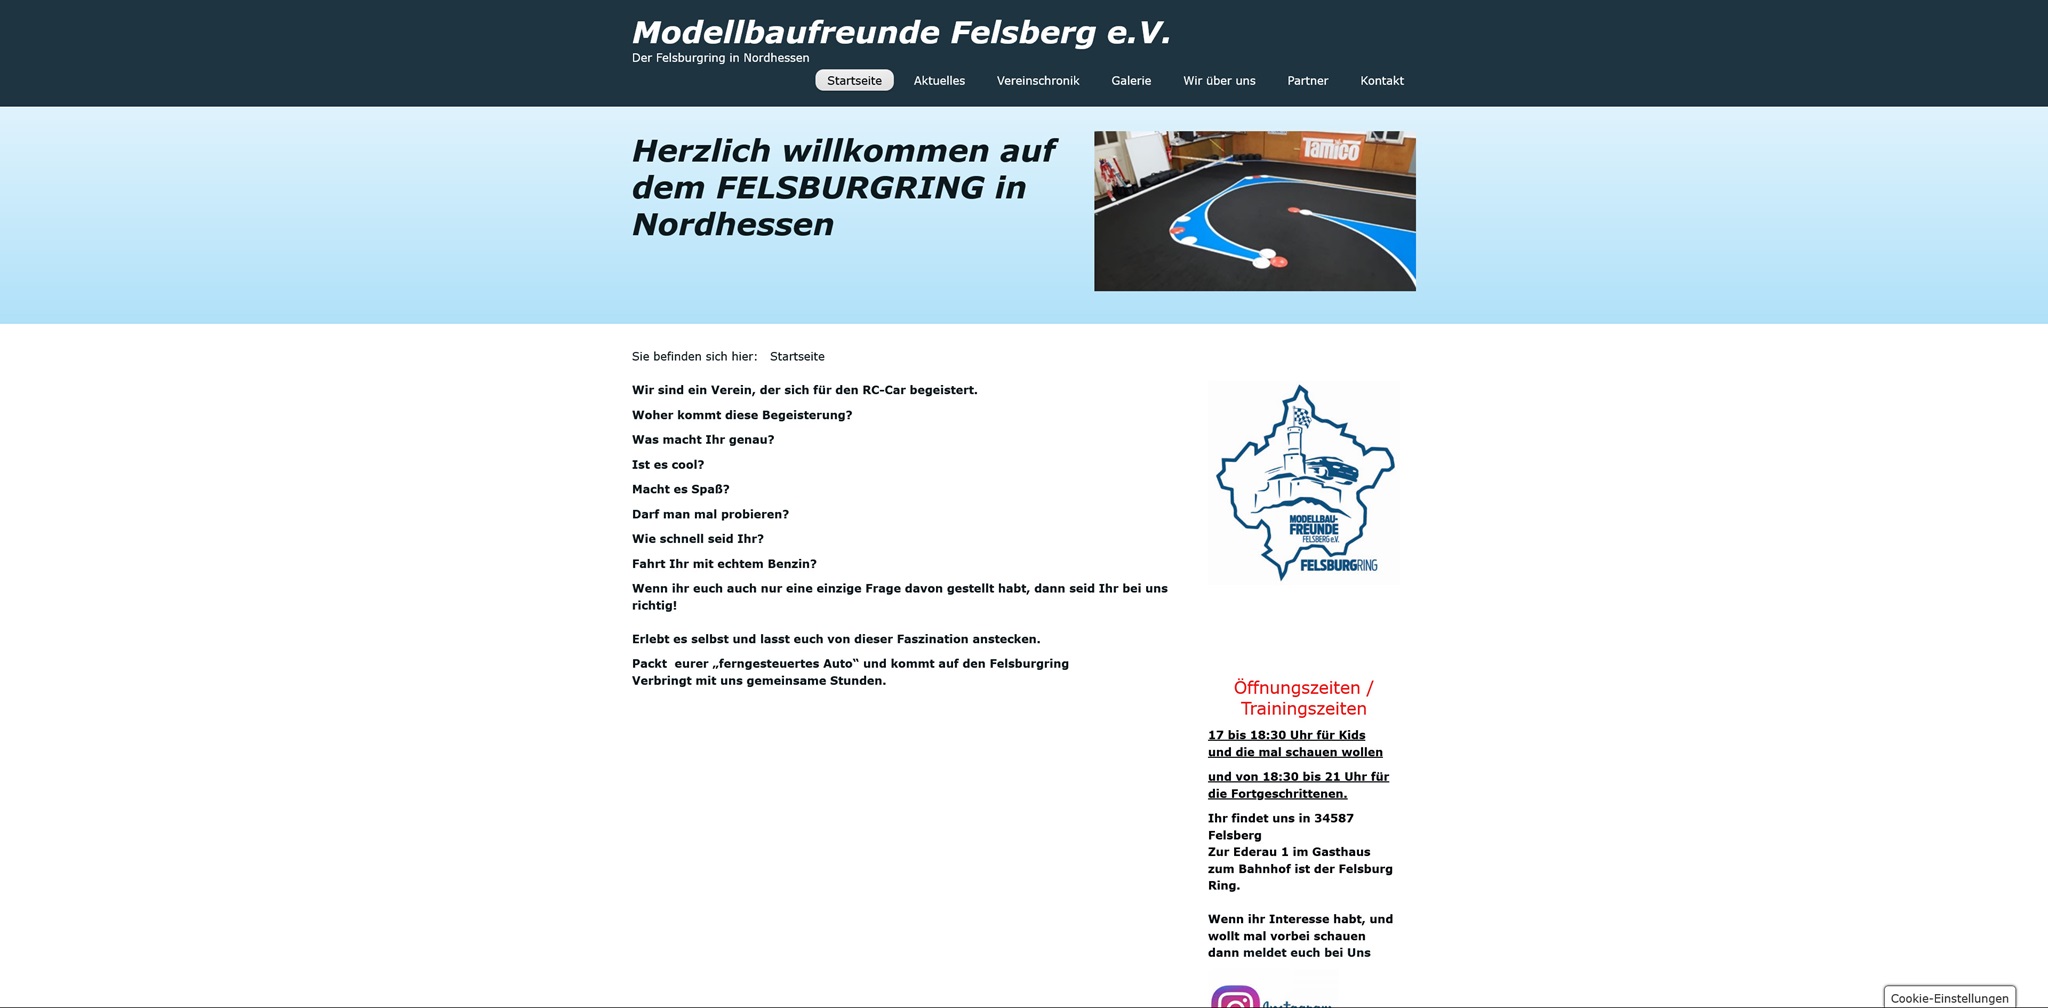 https://www.modellbaufreunde-felsberg.de/